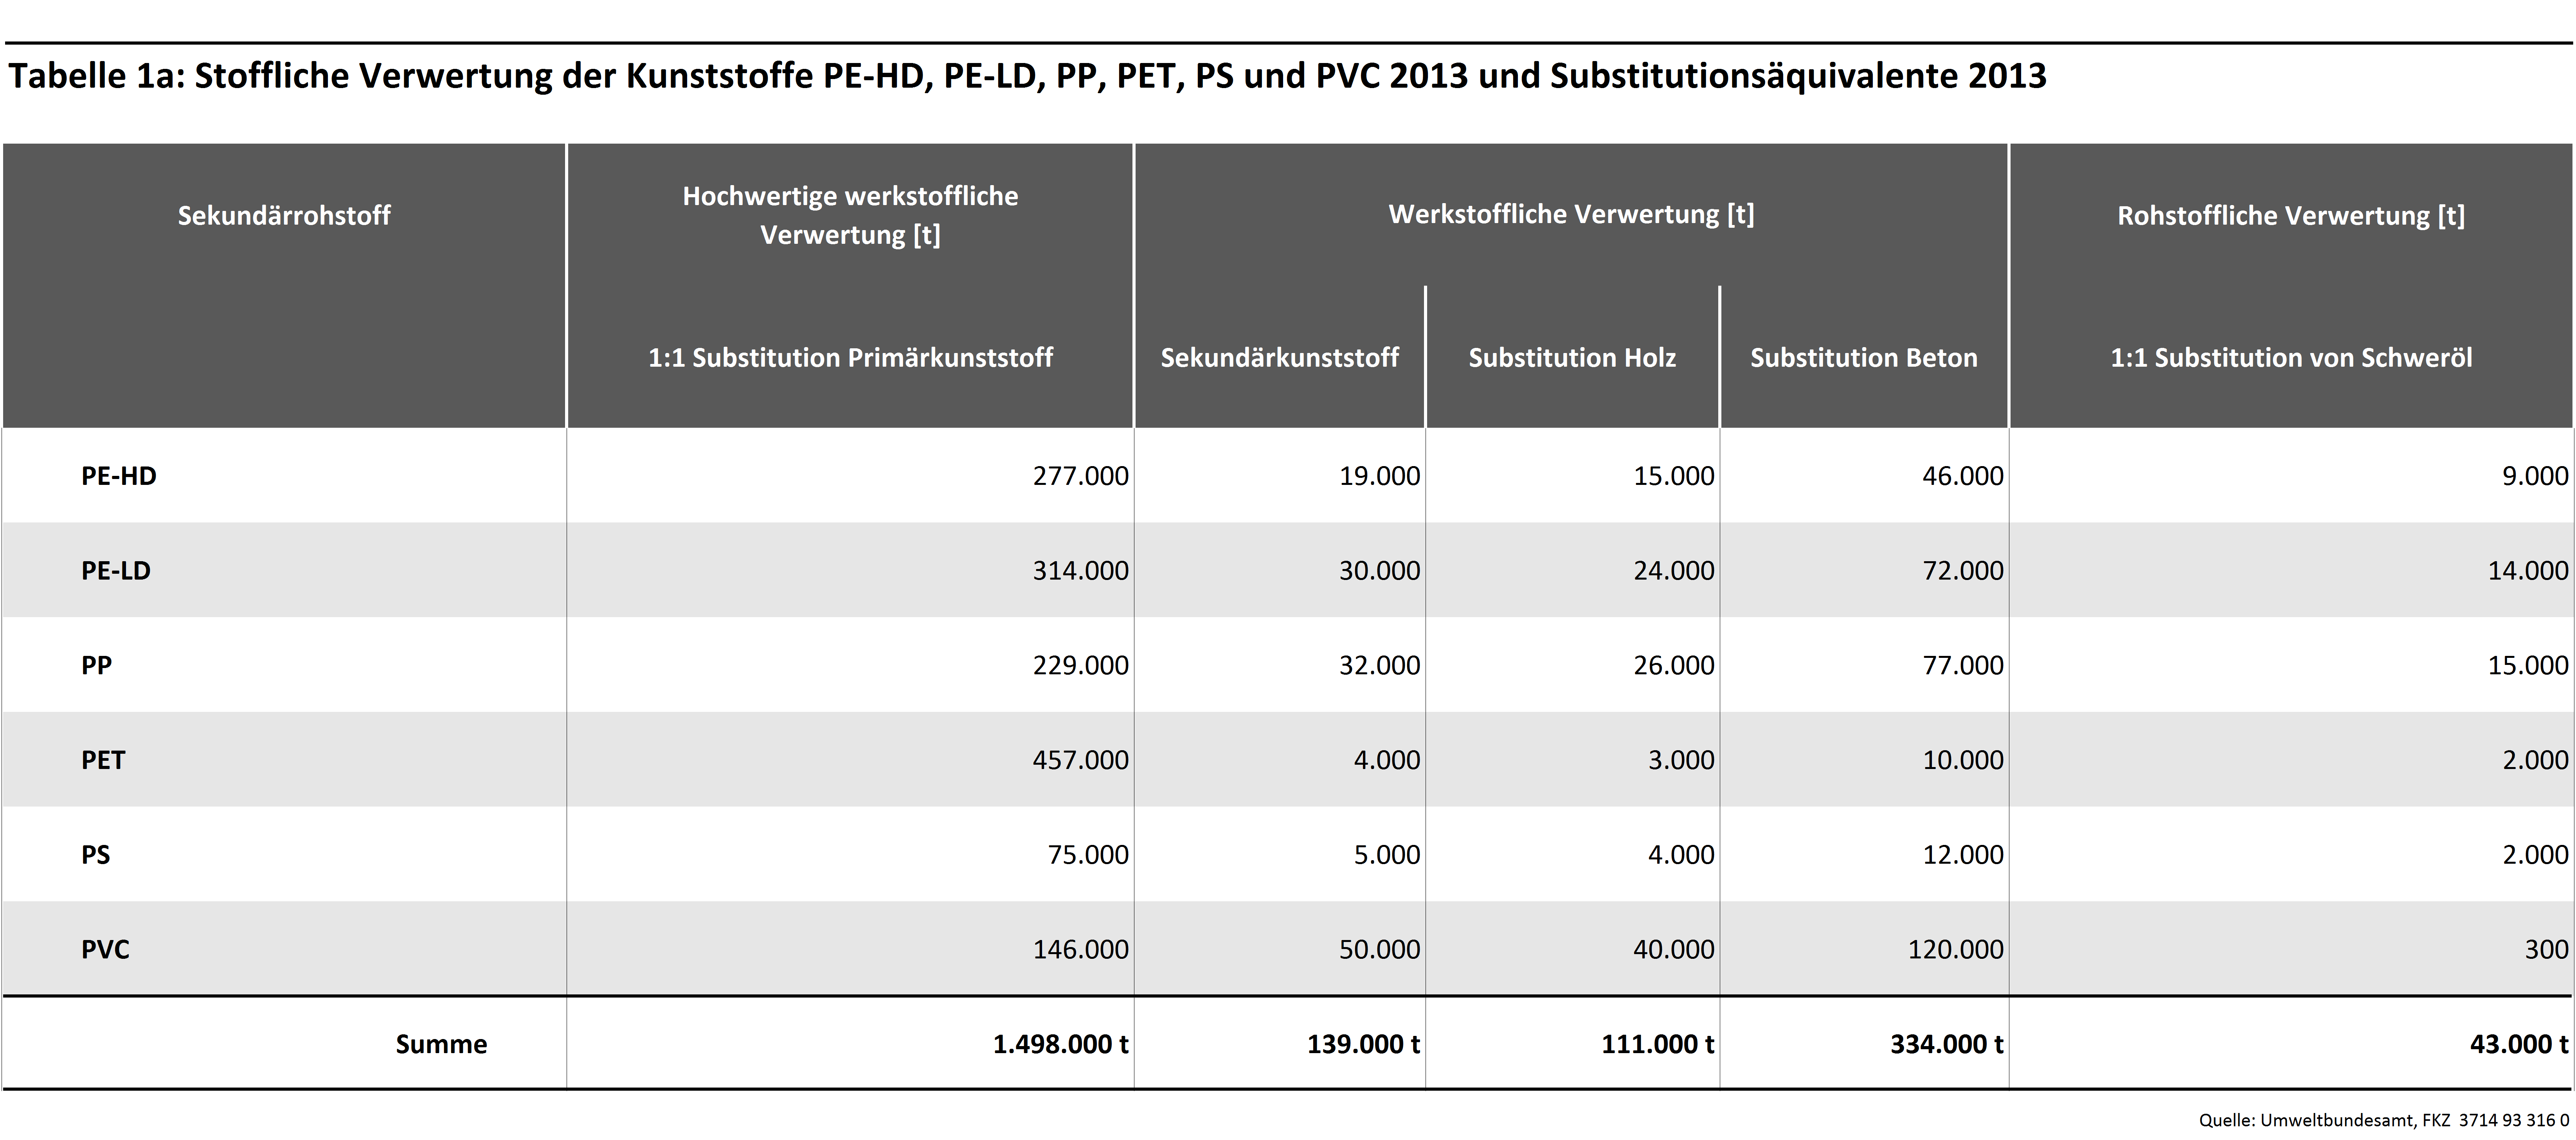 Tab1a: Stoffliche Verwertung der Kunststoffe PE-HD, PE-LD, PP, PET, PS und PVC 2013